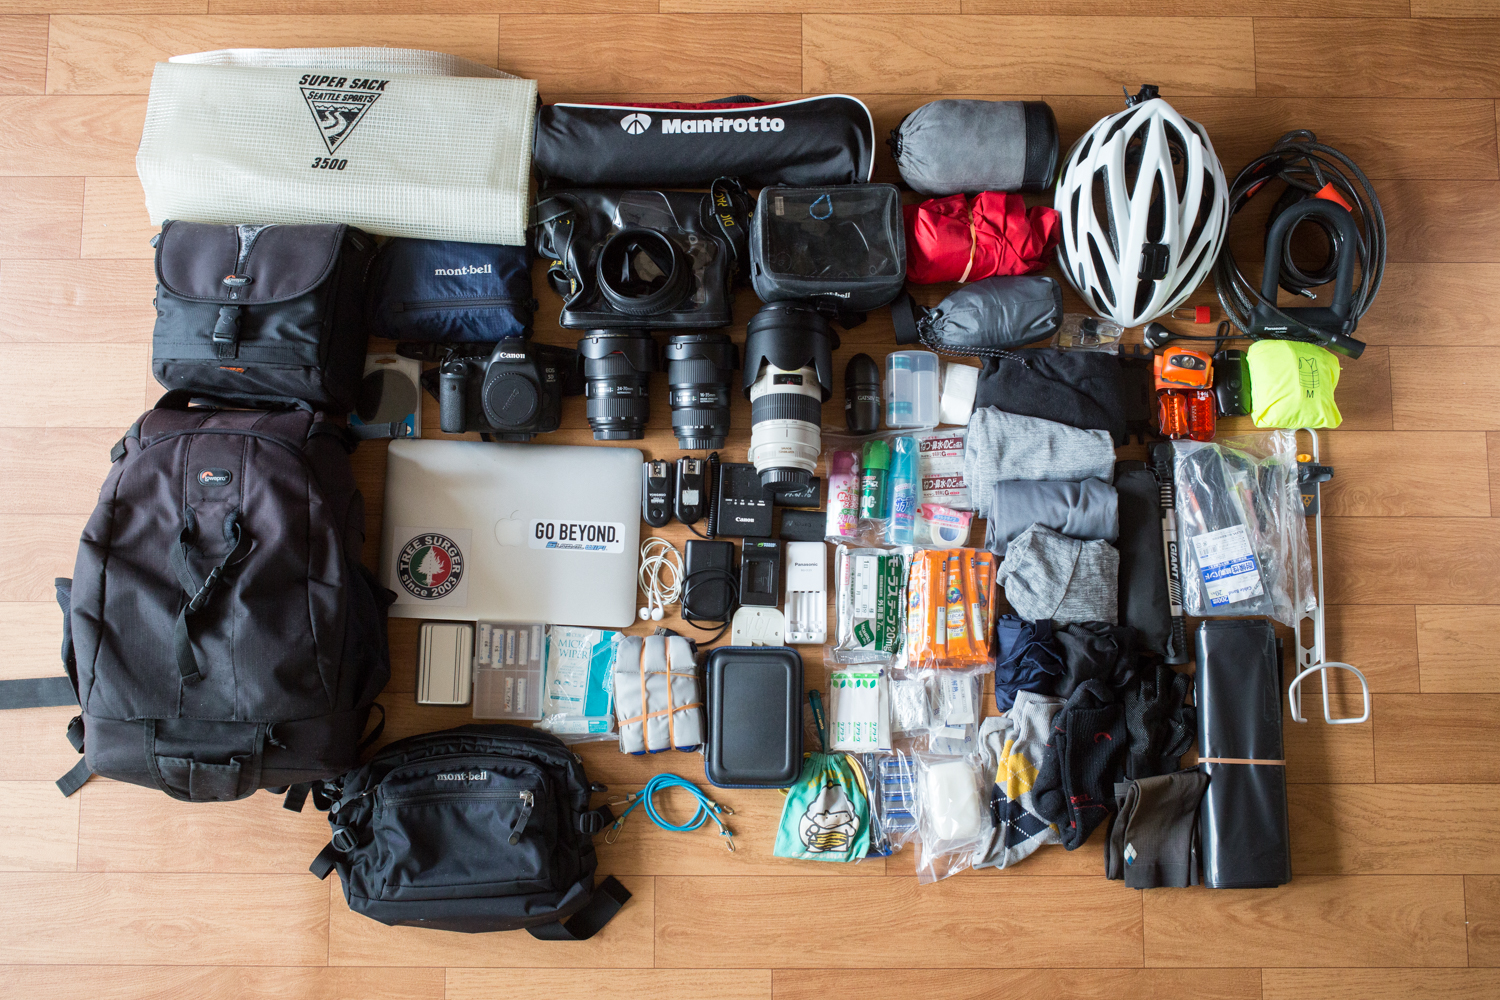 旅の写真家からみたカメラ機材、移動手段としての自転車の装備|自転車ライフの情報サイト「SHIFTA MEDIA」